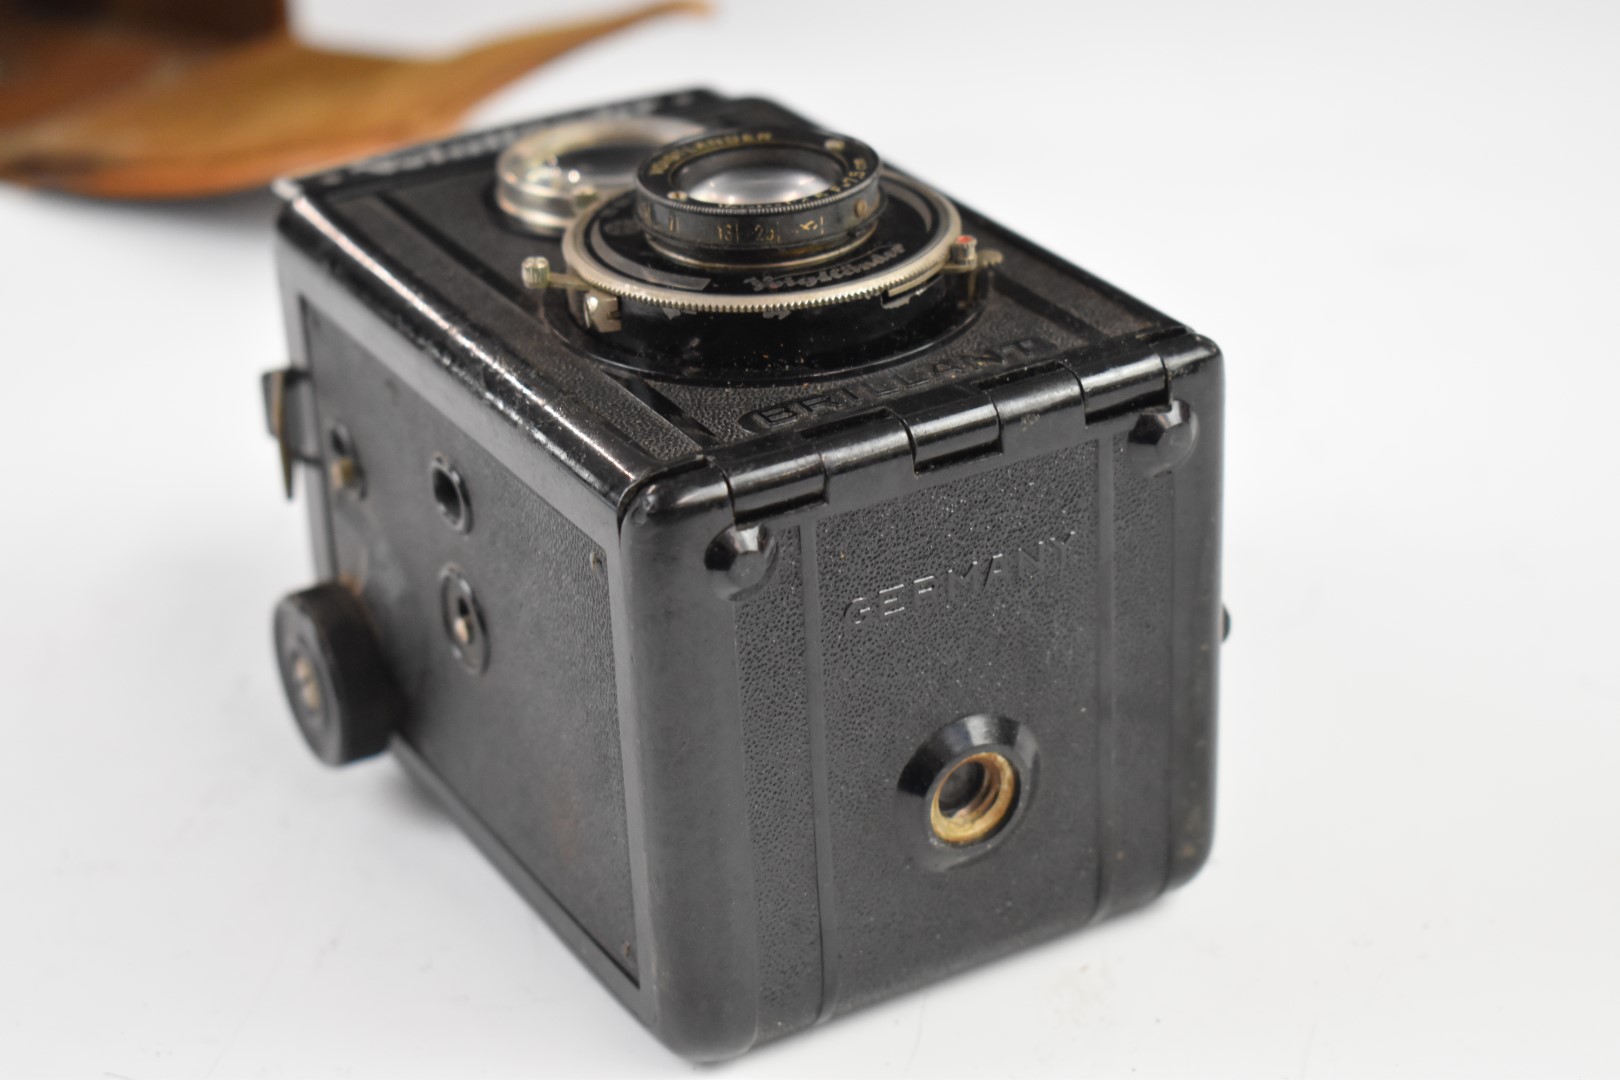 Voigtlander Brilliant TLR camera in original leather case - Image 7 of 8